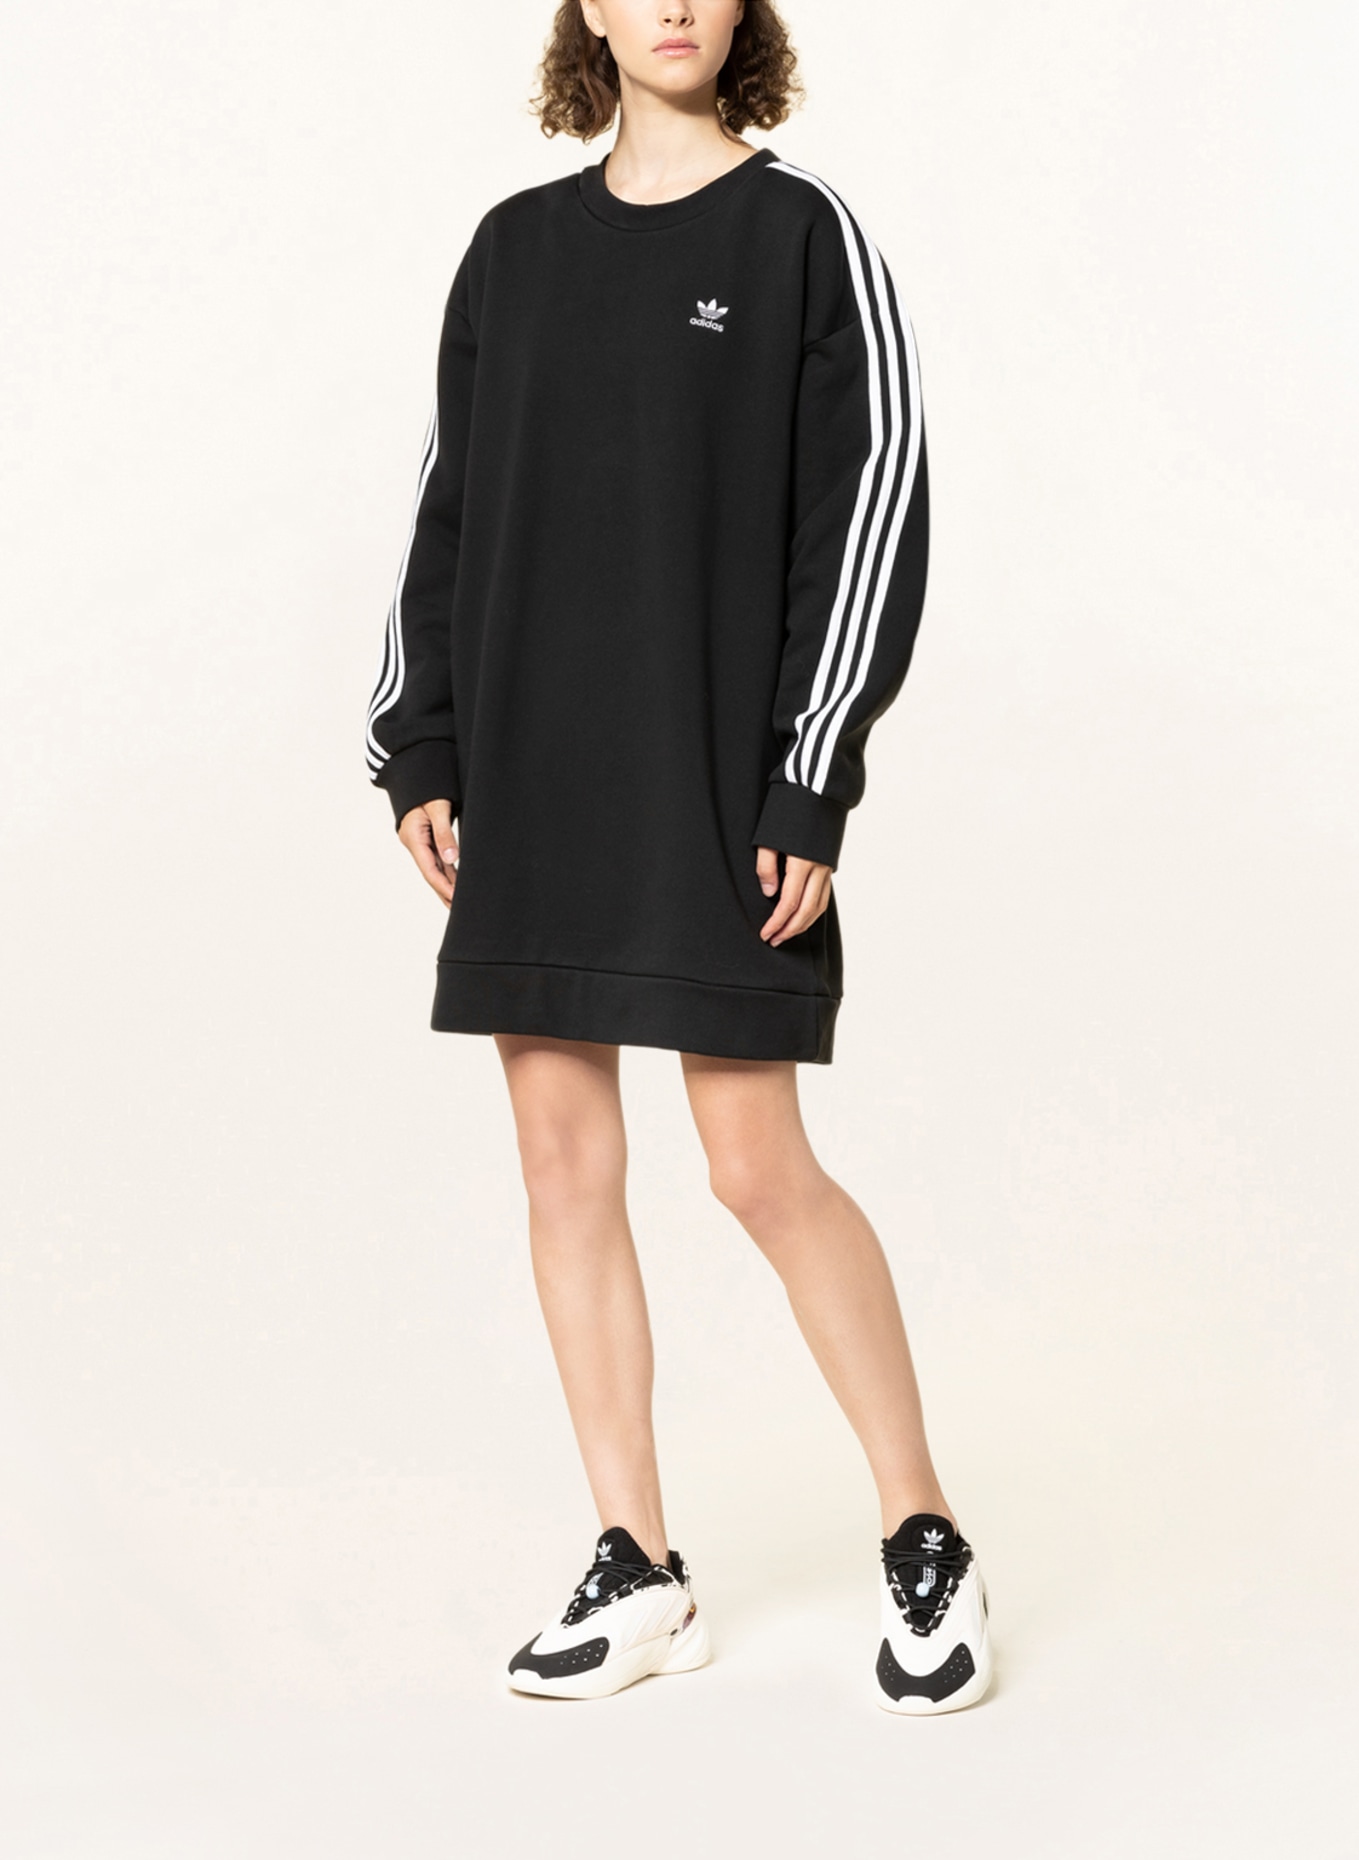 adidas Originals Sweater dress ADICOLOR CLASSICS in black